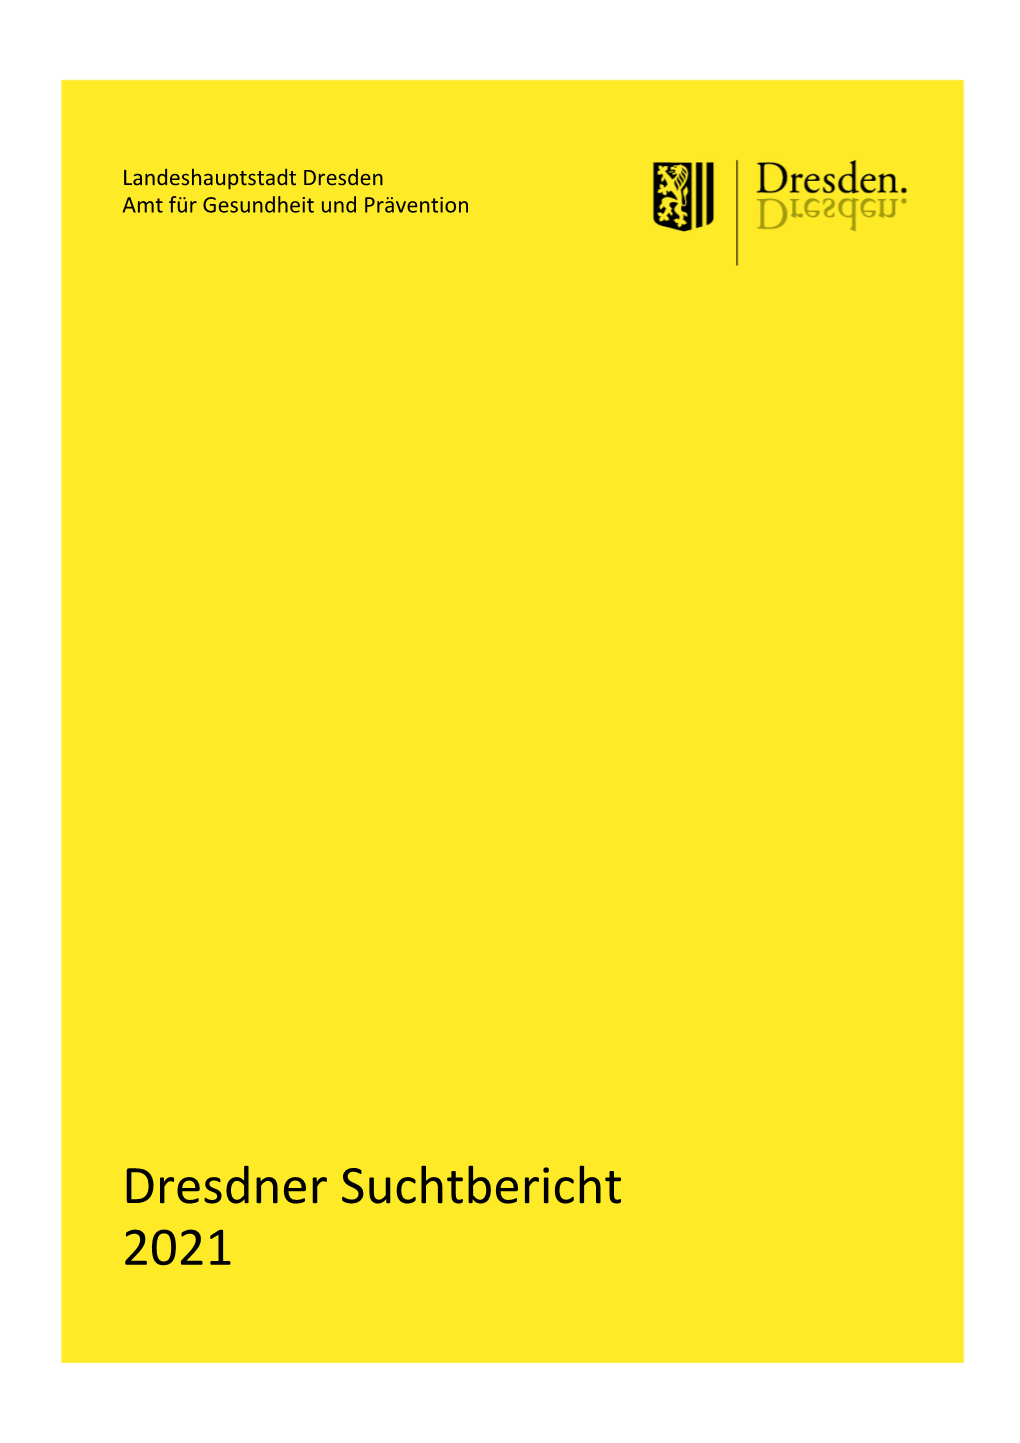 Dresdner Suchtbericht 2021